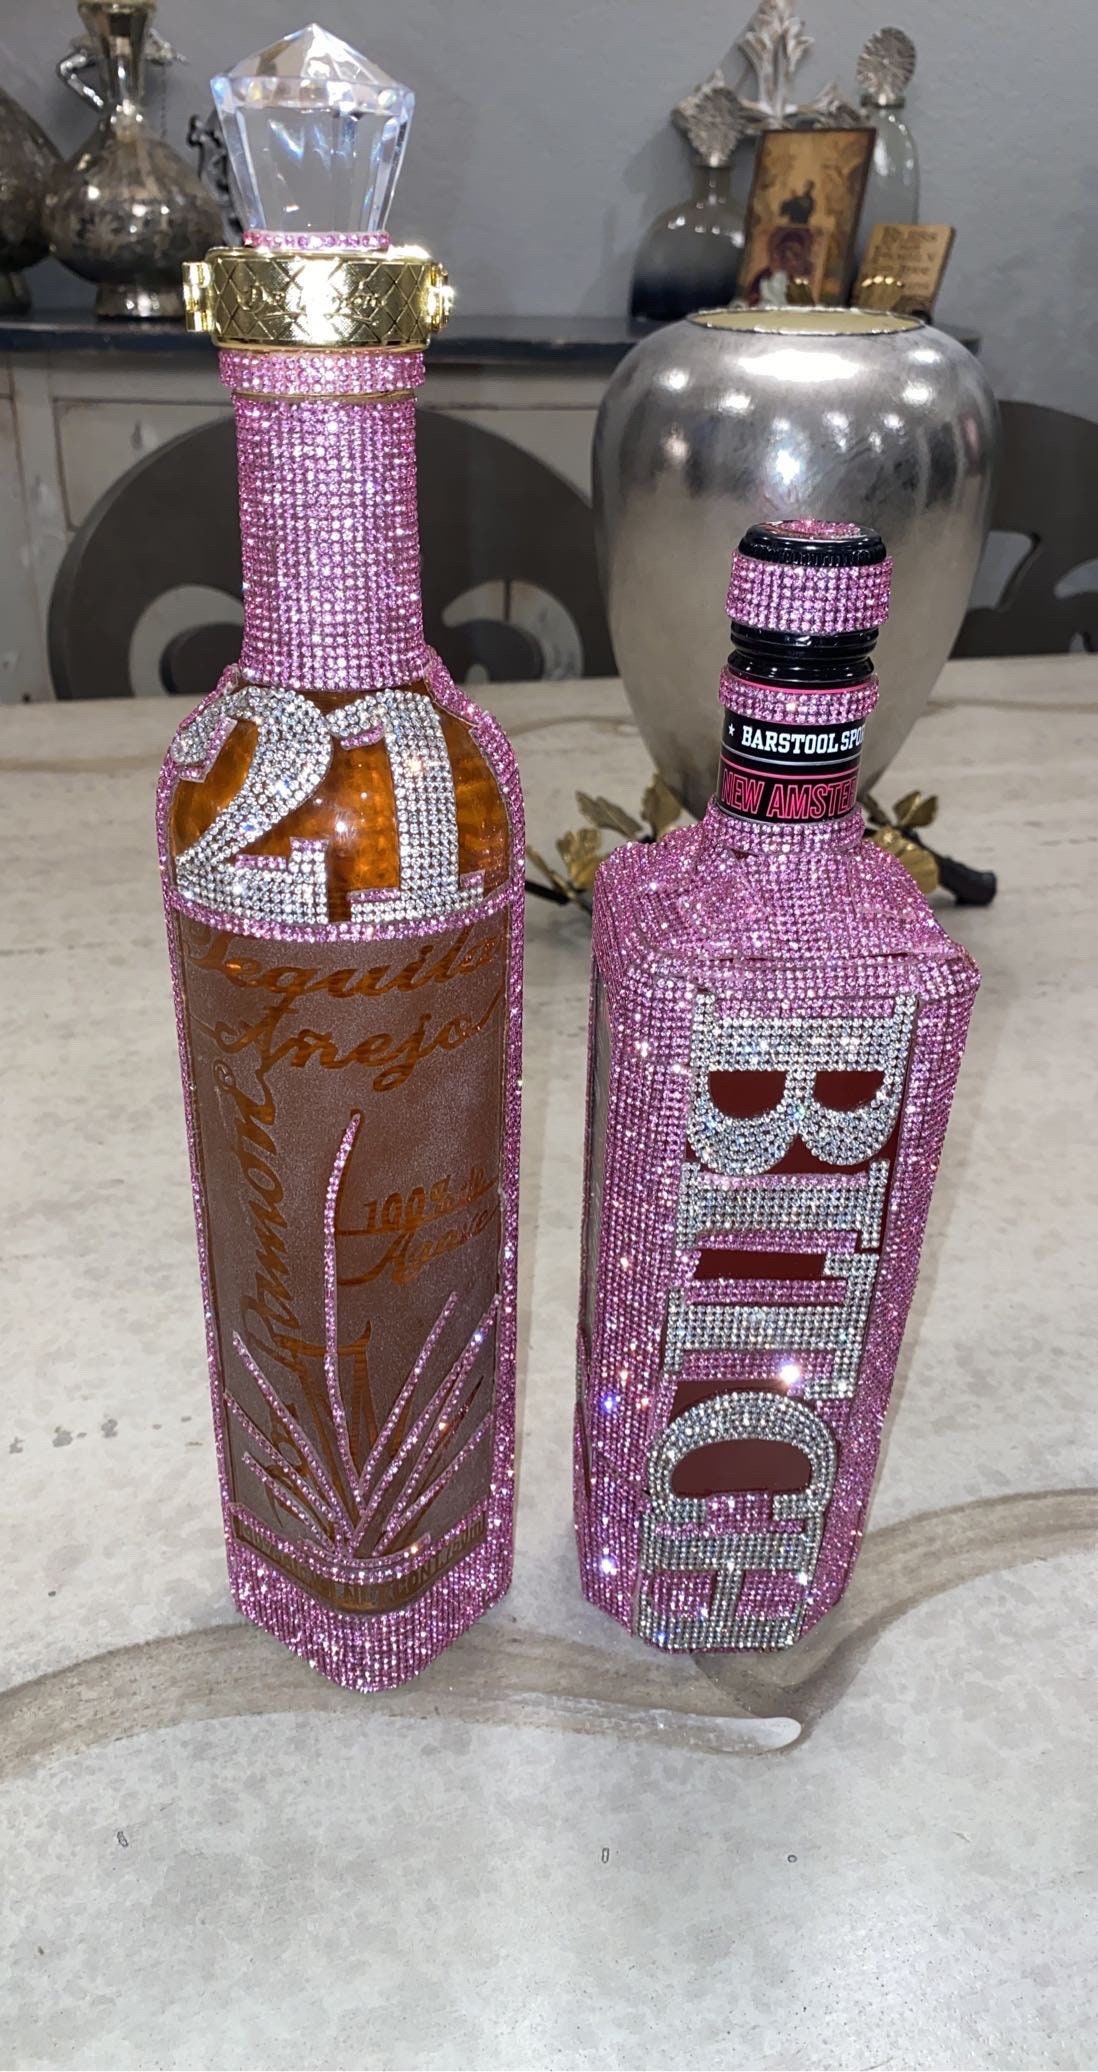 Mini Liquor bottles with Glitter shimmer inside - epoxy sealed shut.